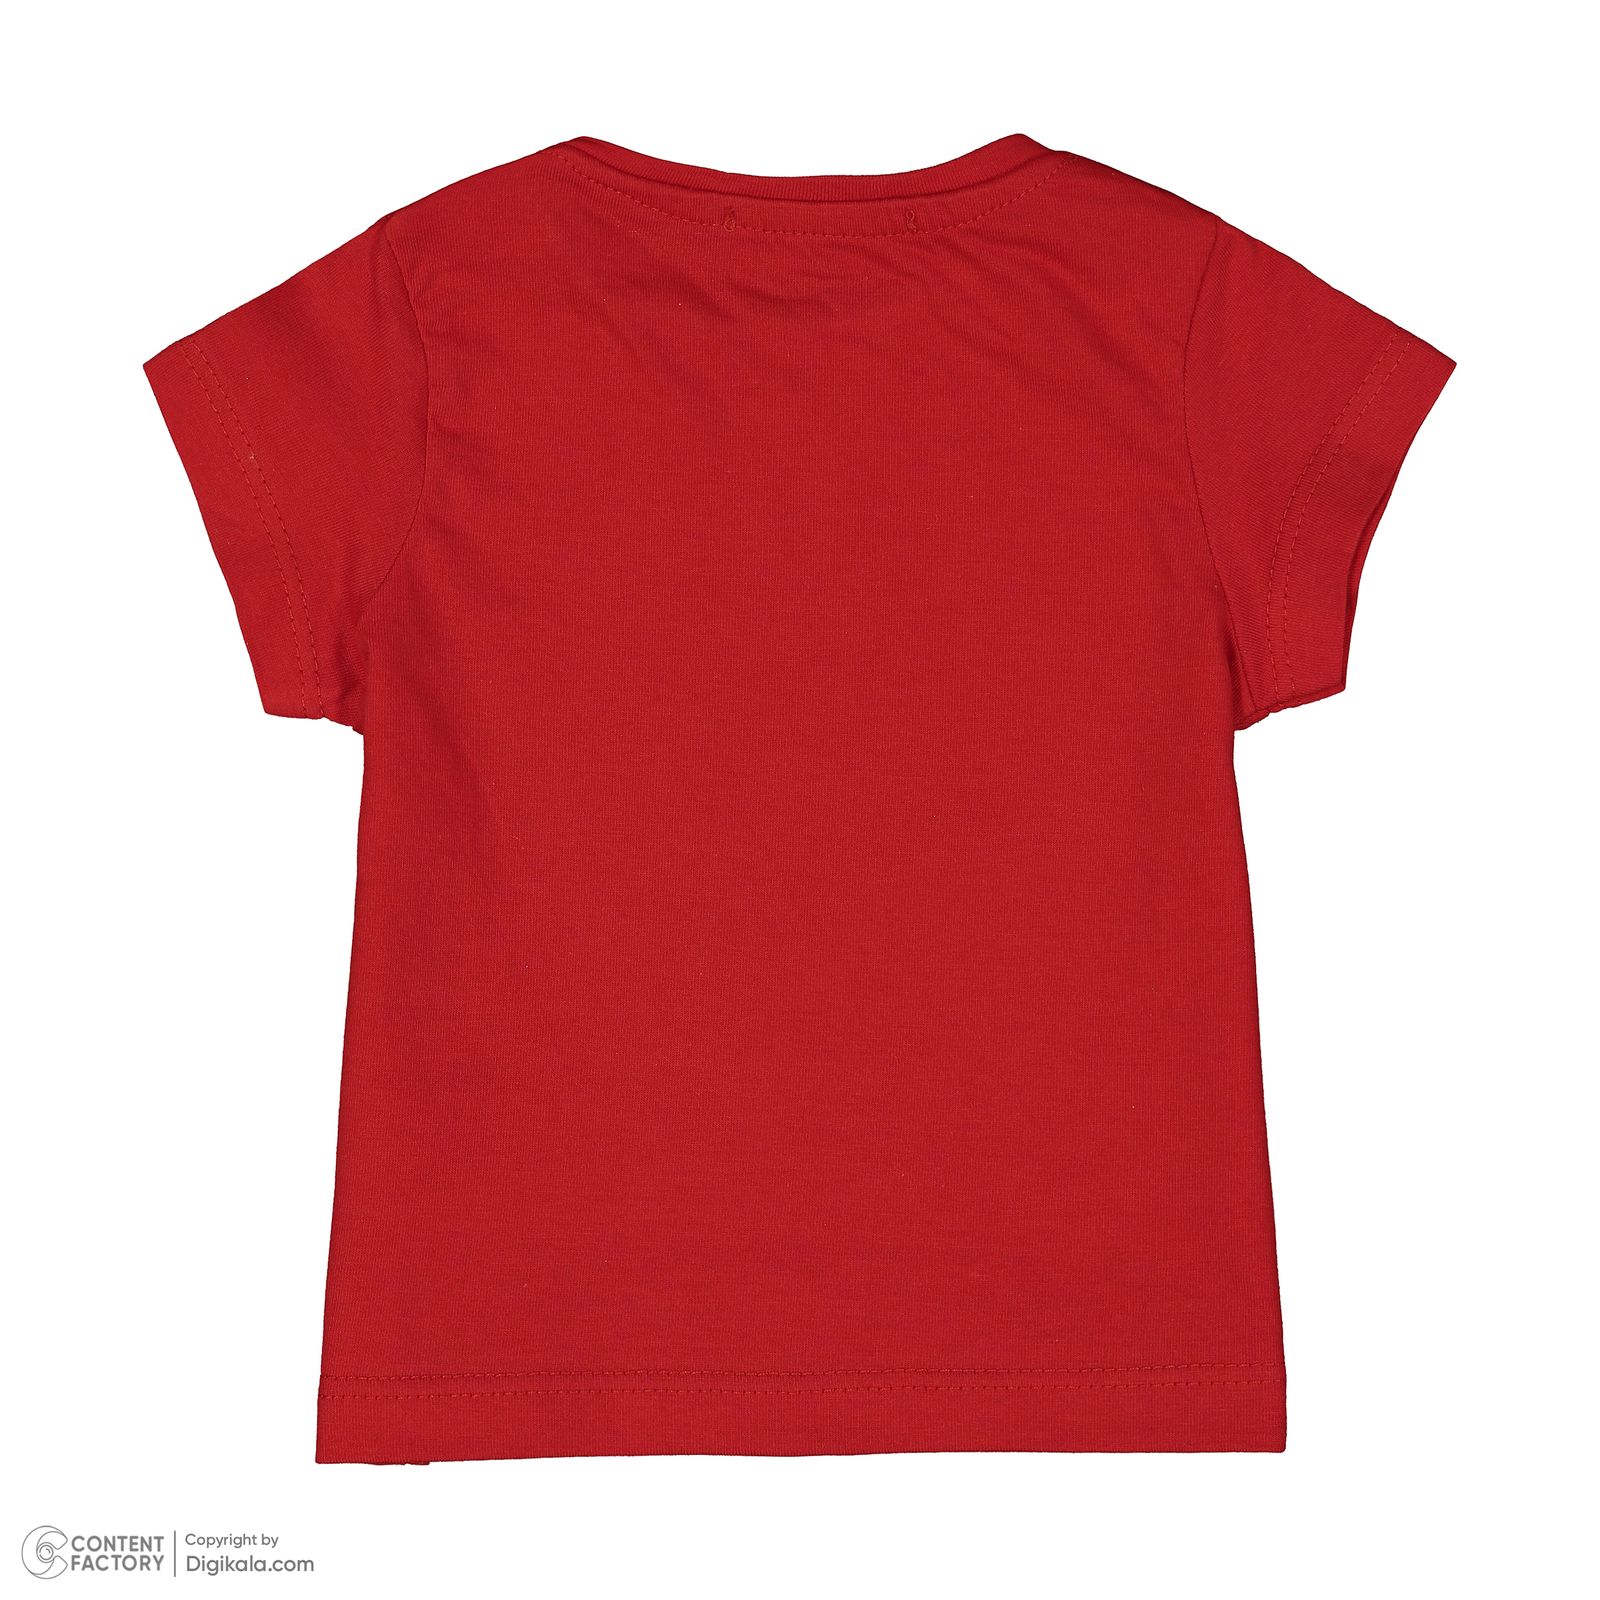 ست تی شرت و شلوارک نوزادی ایندیگو مدل 13216 رنگ قرمز -  - 4